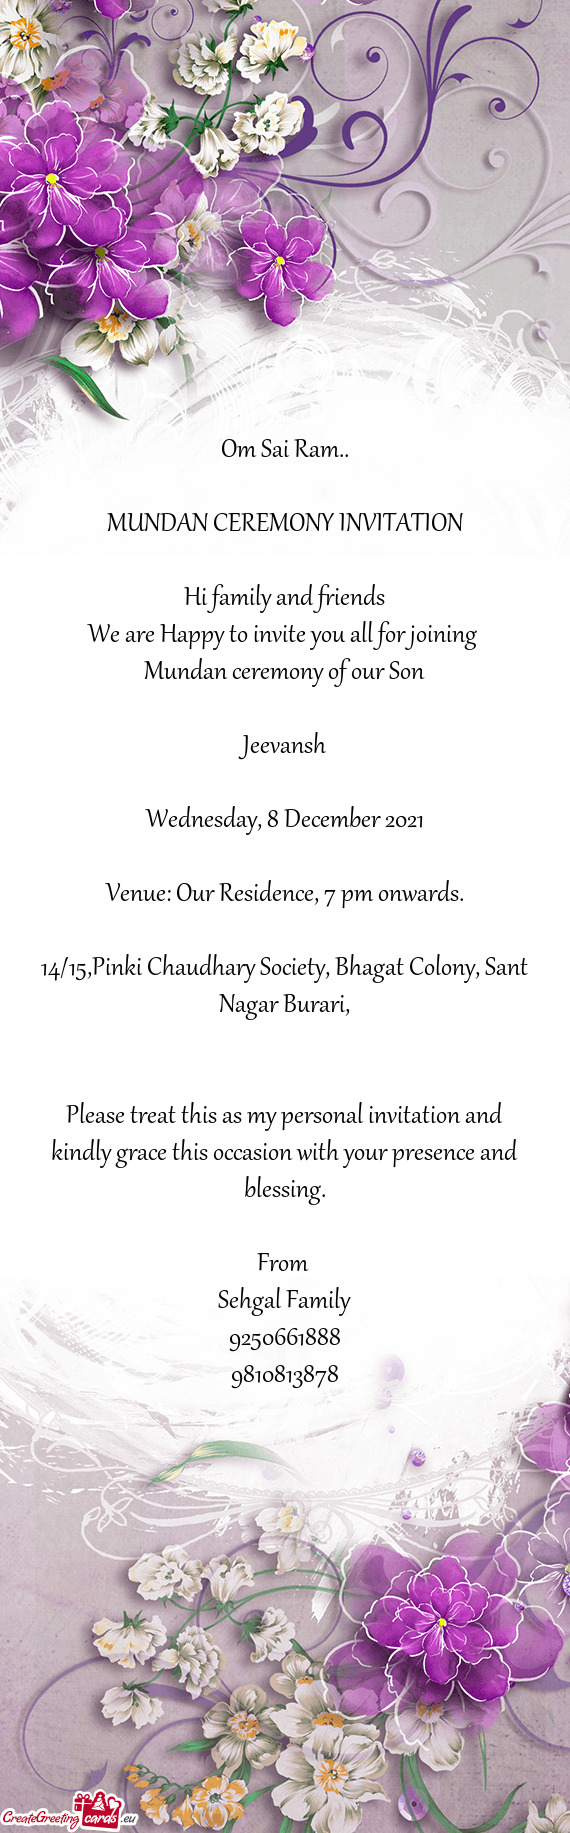 14/15,Pinki Chaudhary Society, Bhagat Colony, Sant Nagar Burari